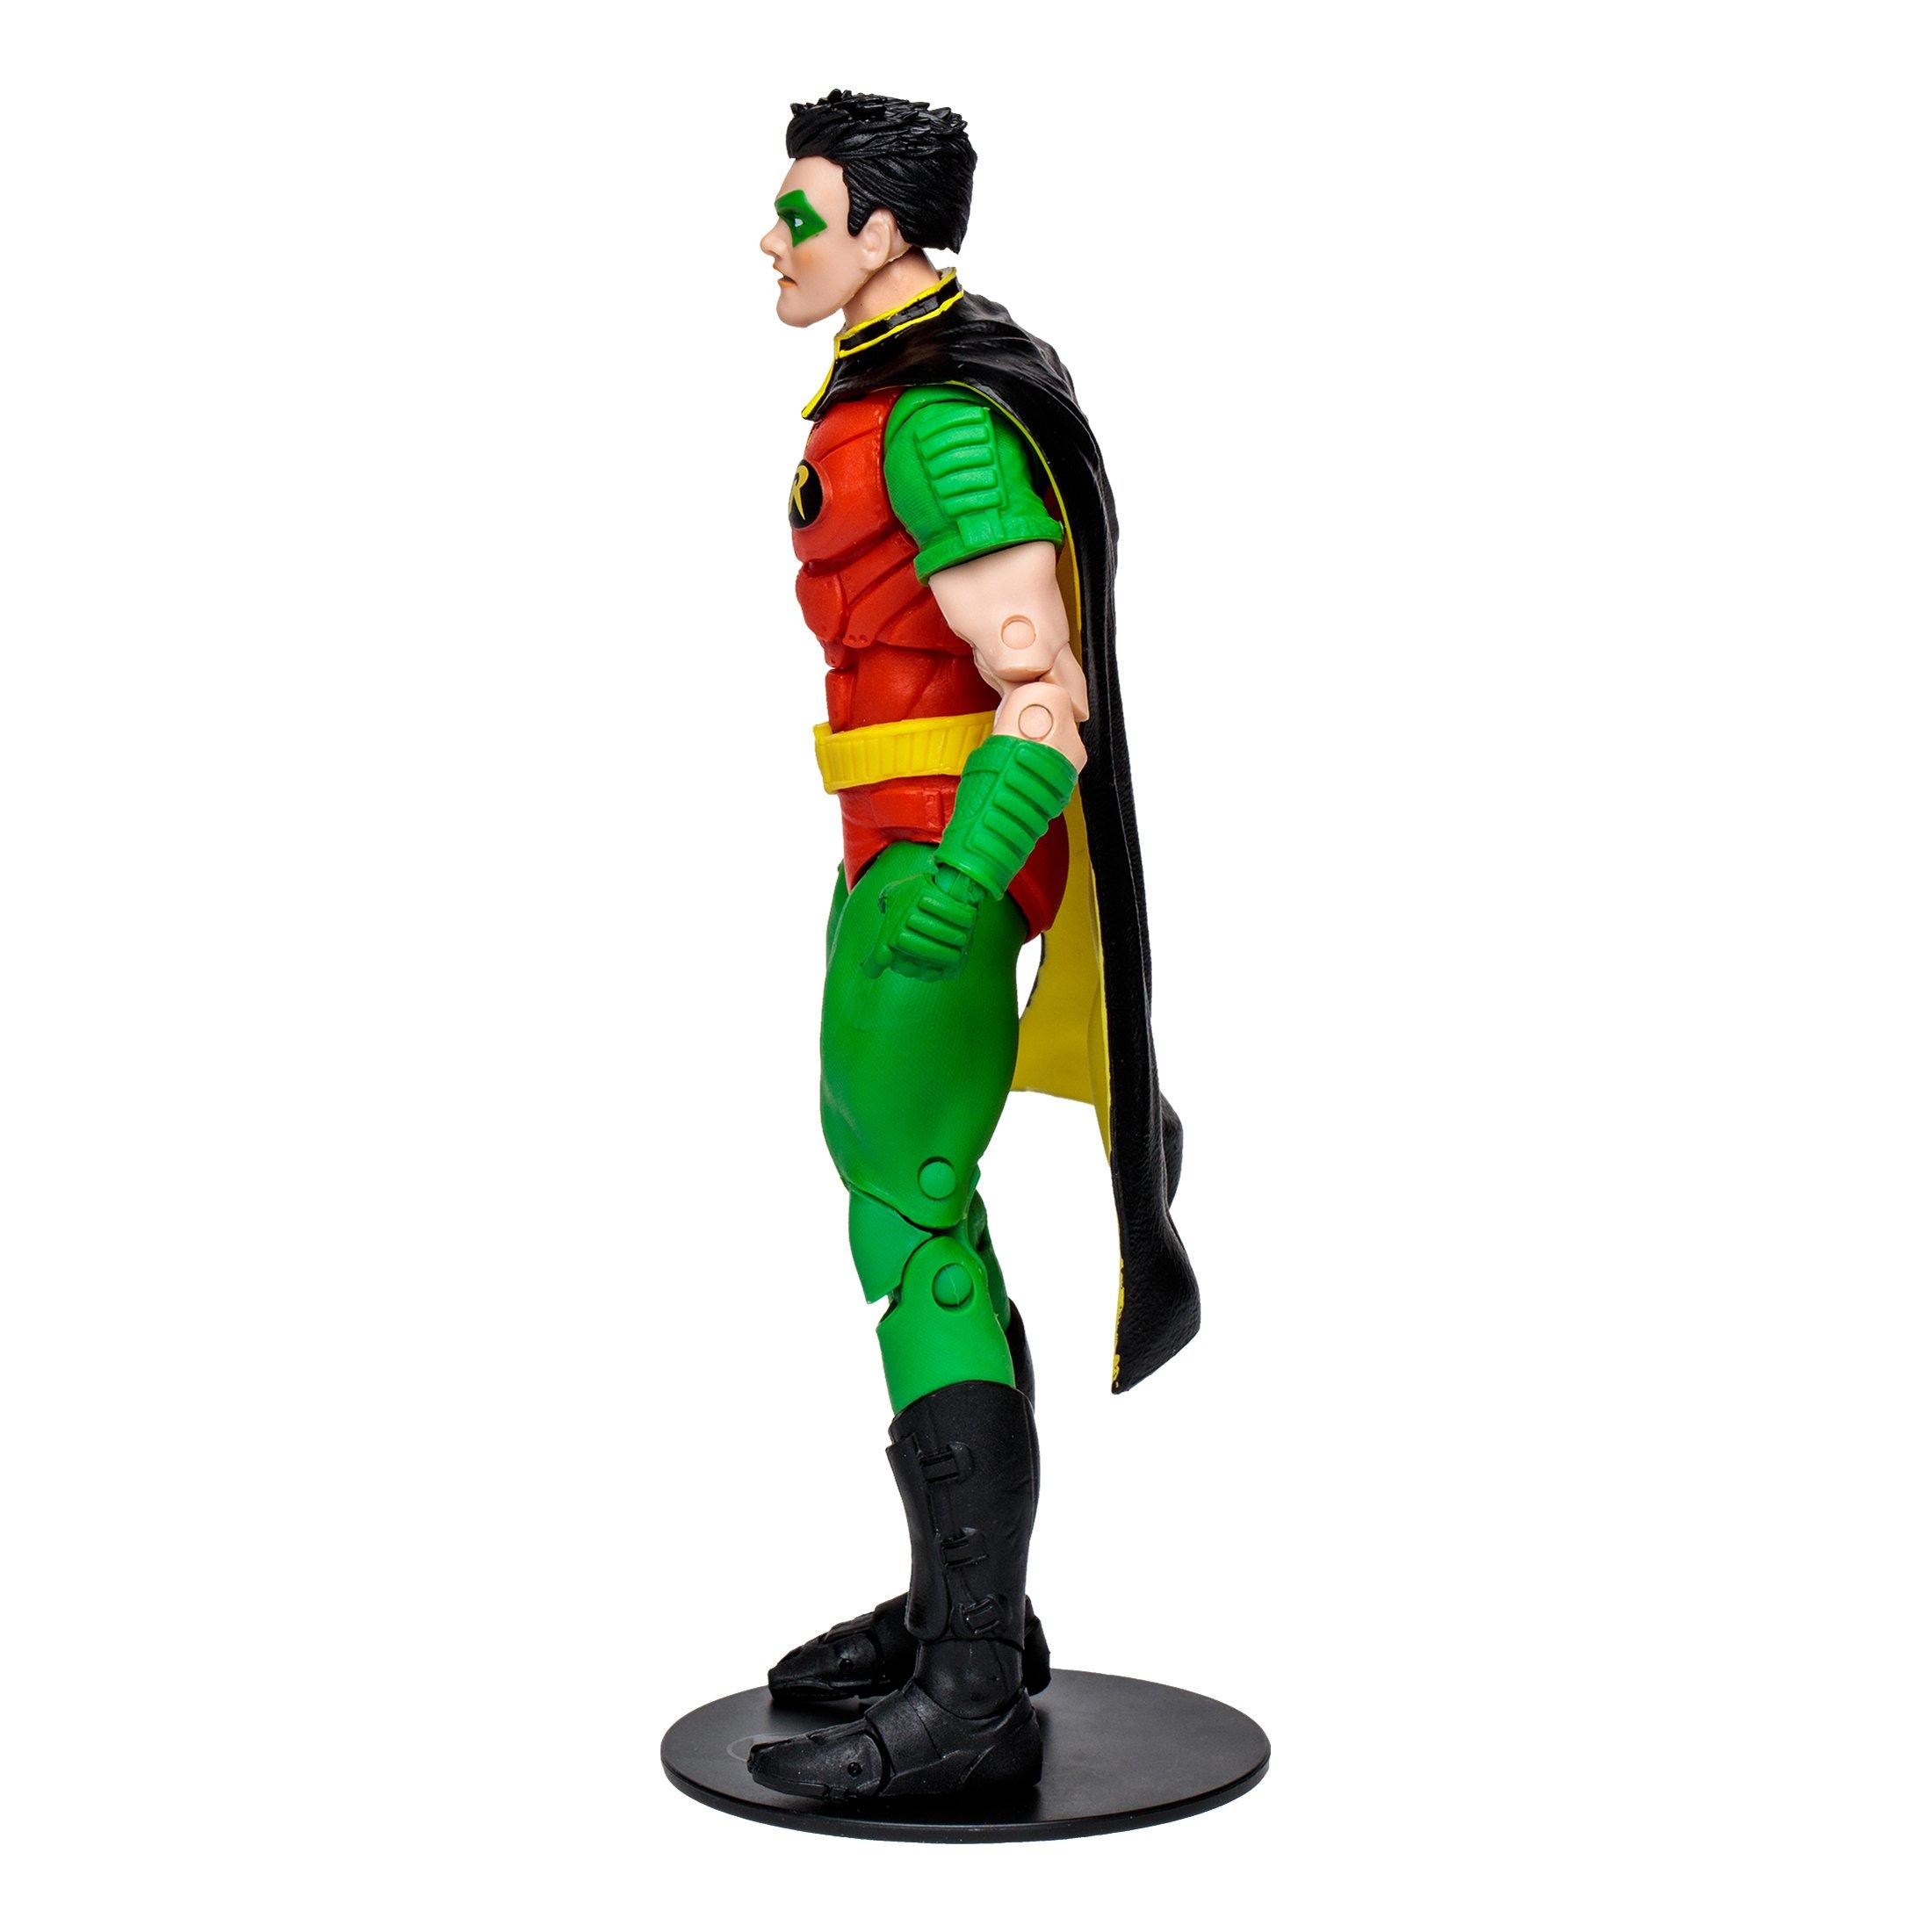 McFarlane Toys DC Multiverse Robin (Tim Drake) 7-in Action Figure